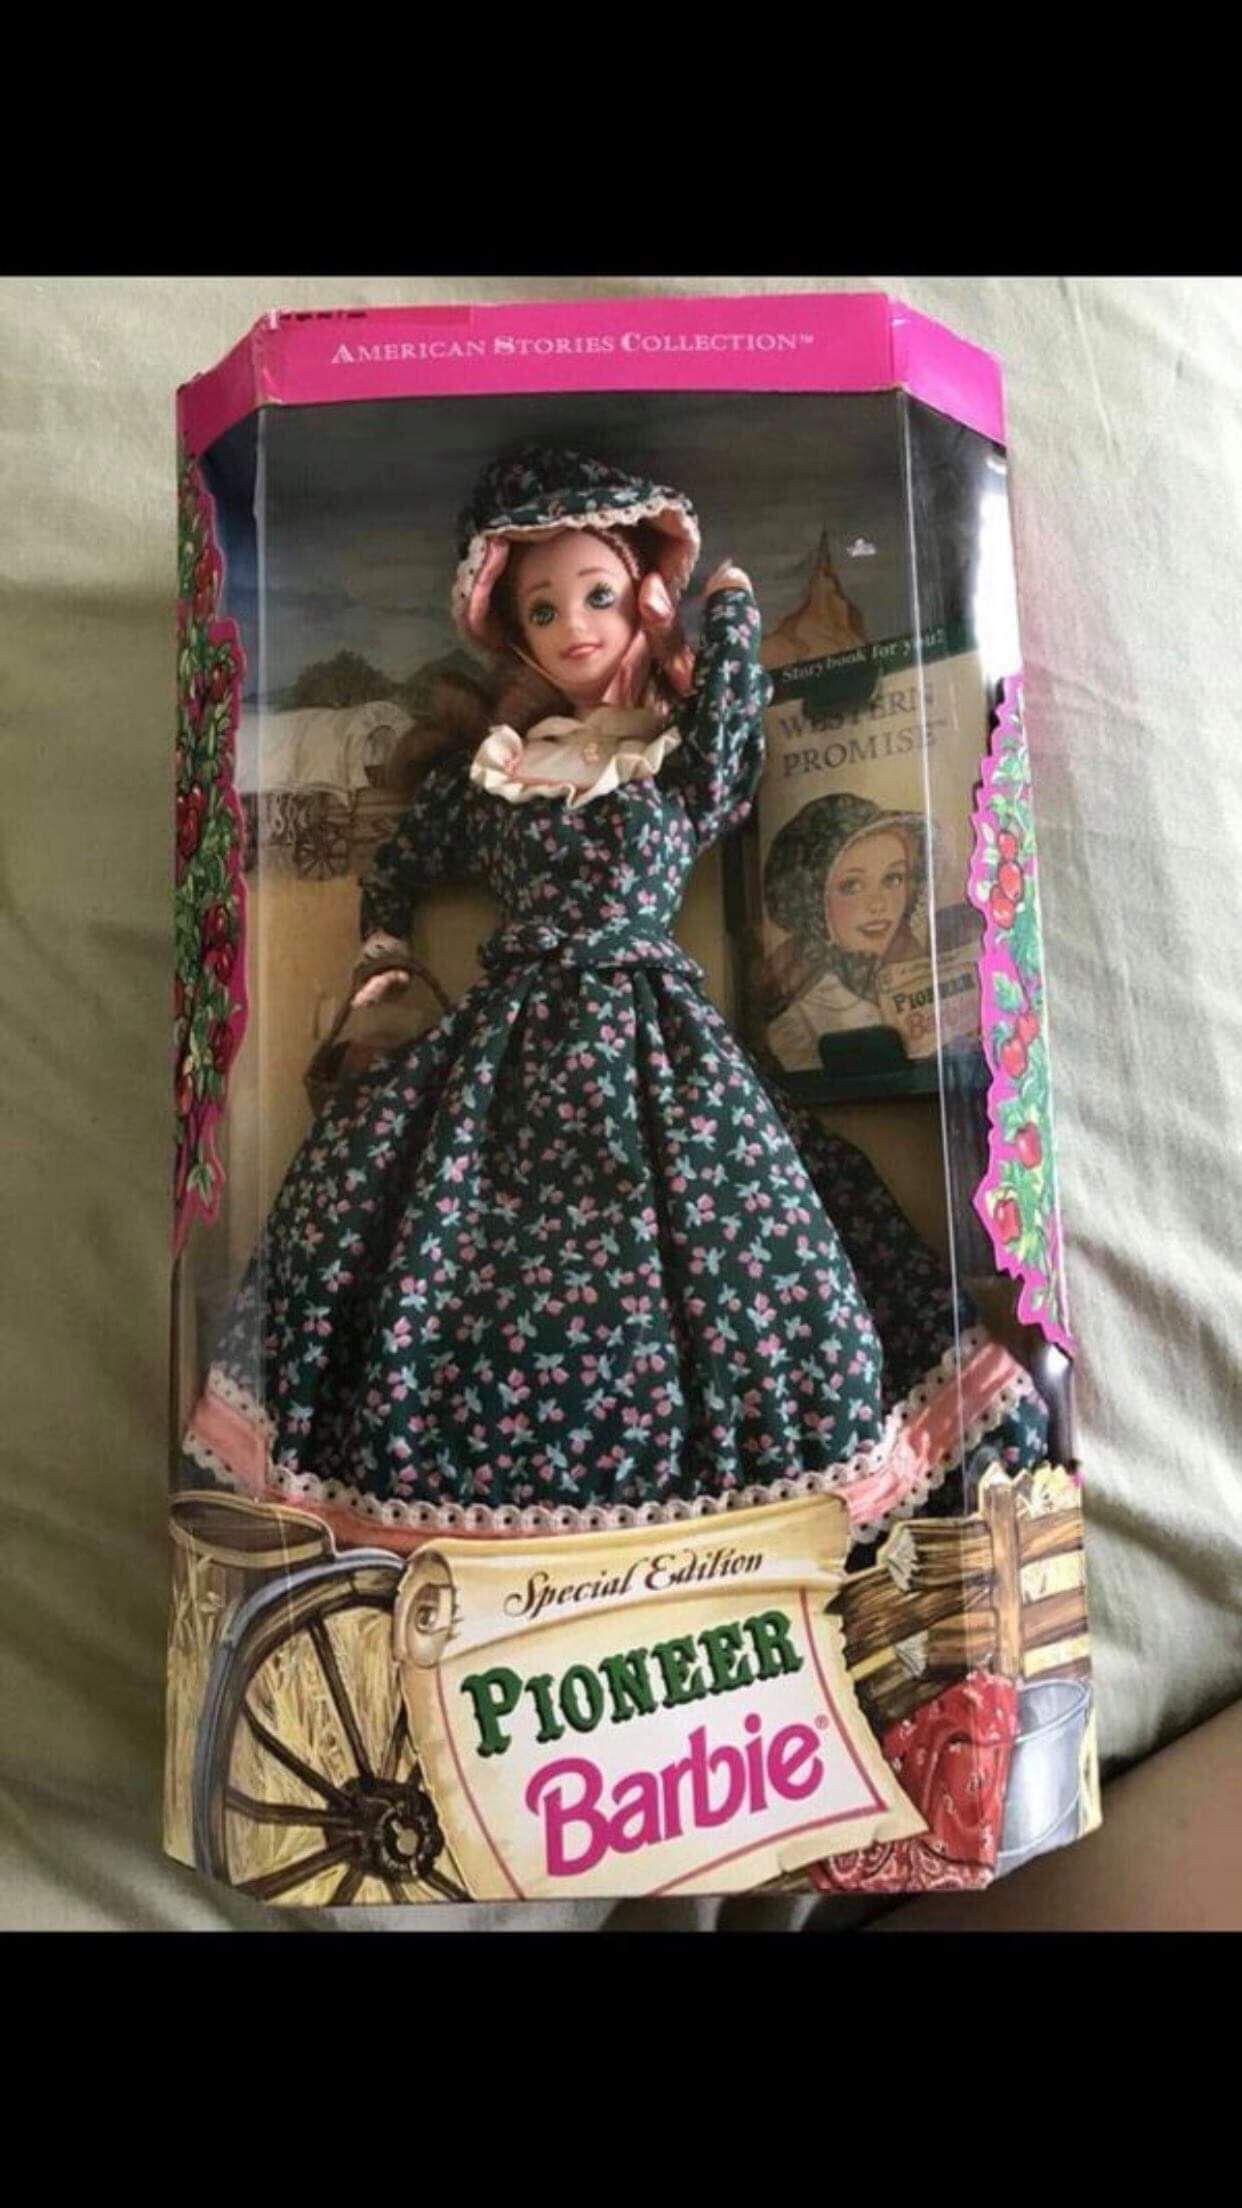 New pioneer barbie